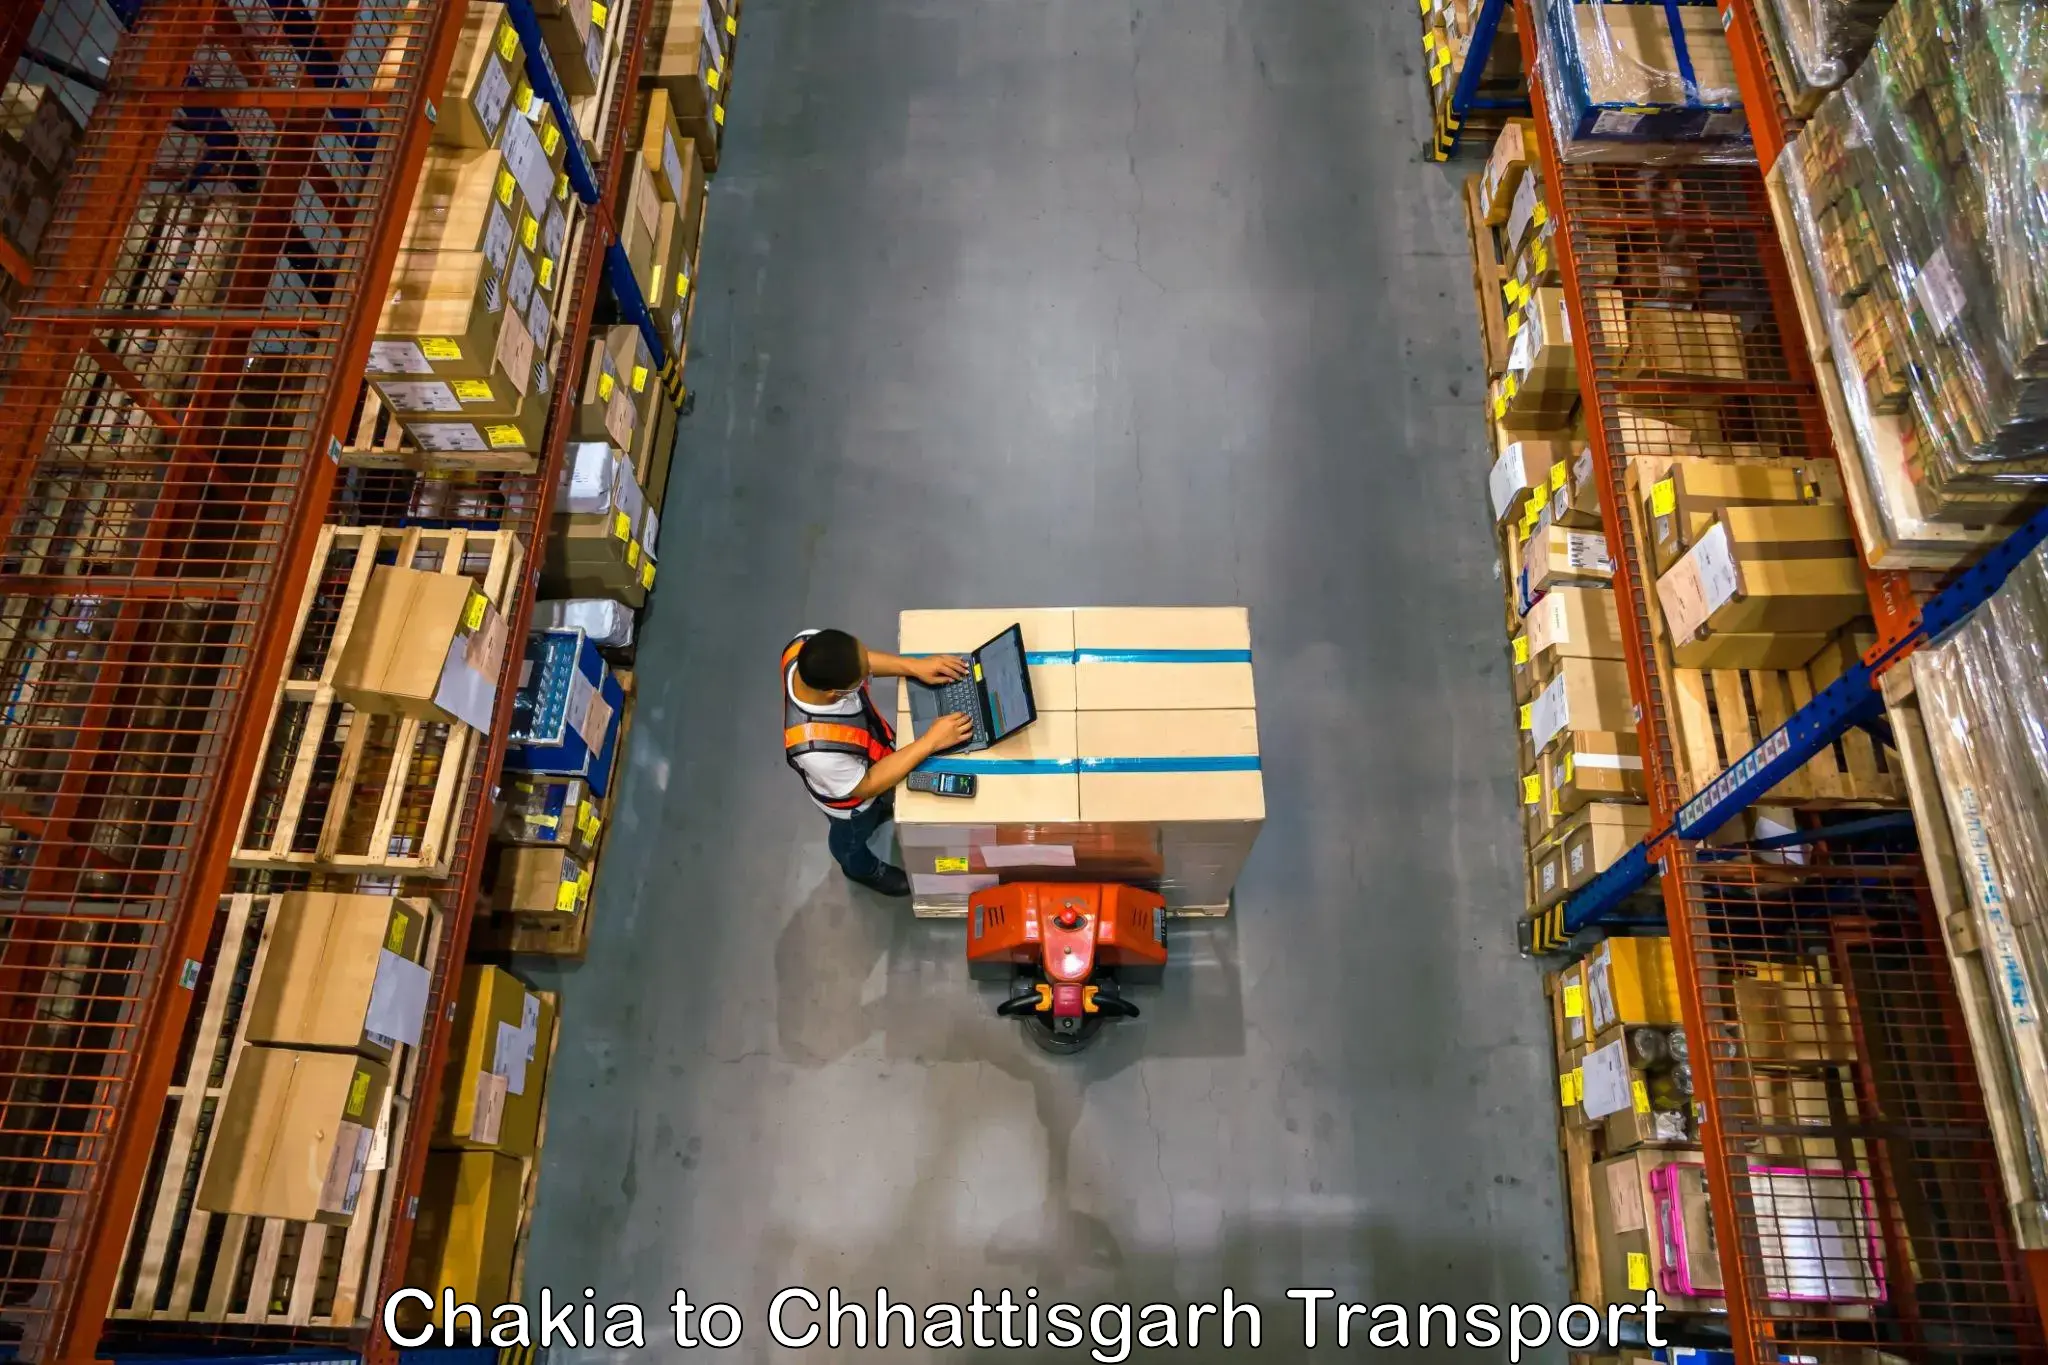 Container transport service Chakia to Raigarh Chhattisgarh